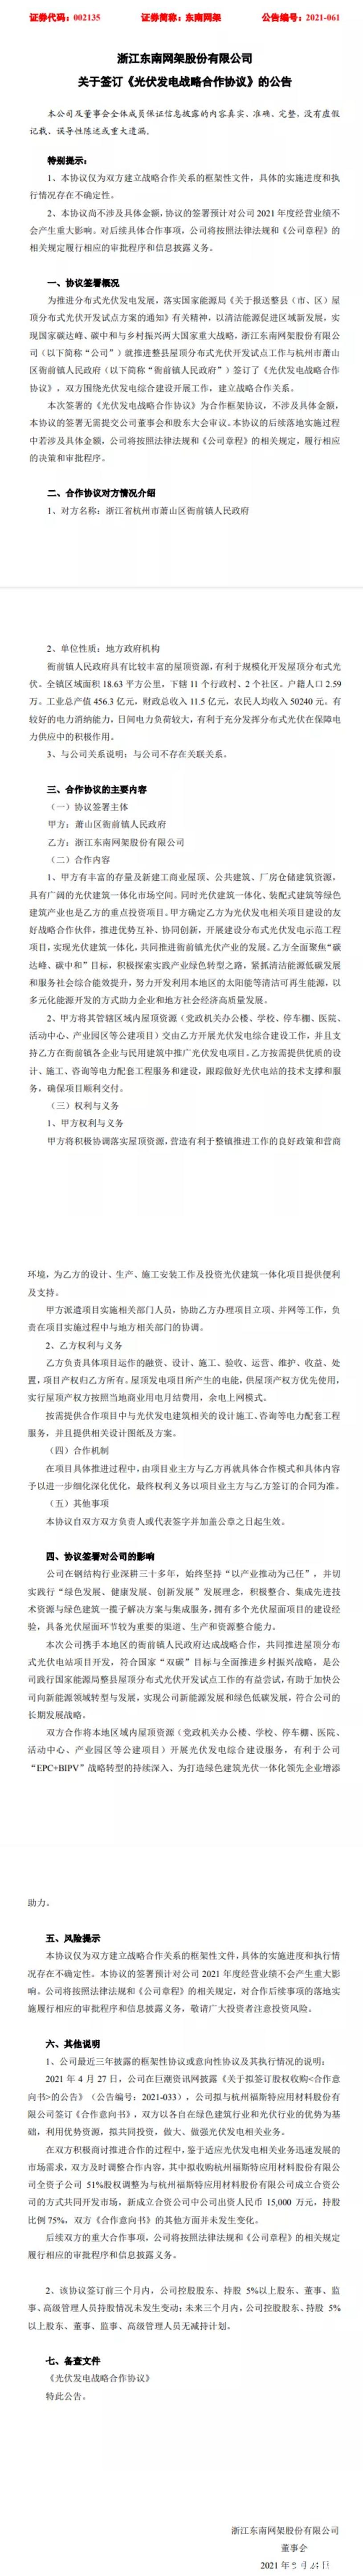 整县推进 | 东南网架&杭州市萧山区衙前镇人民政府签订《光伏发电战略合作协议》